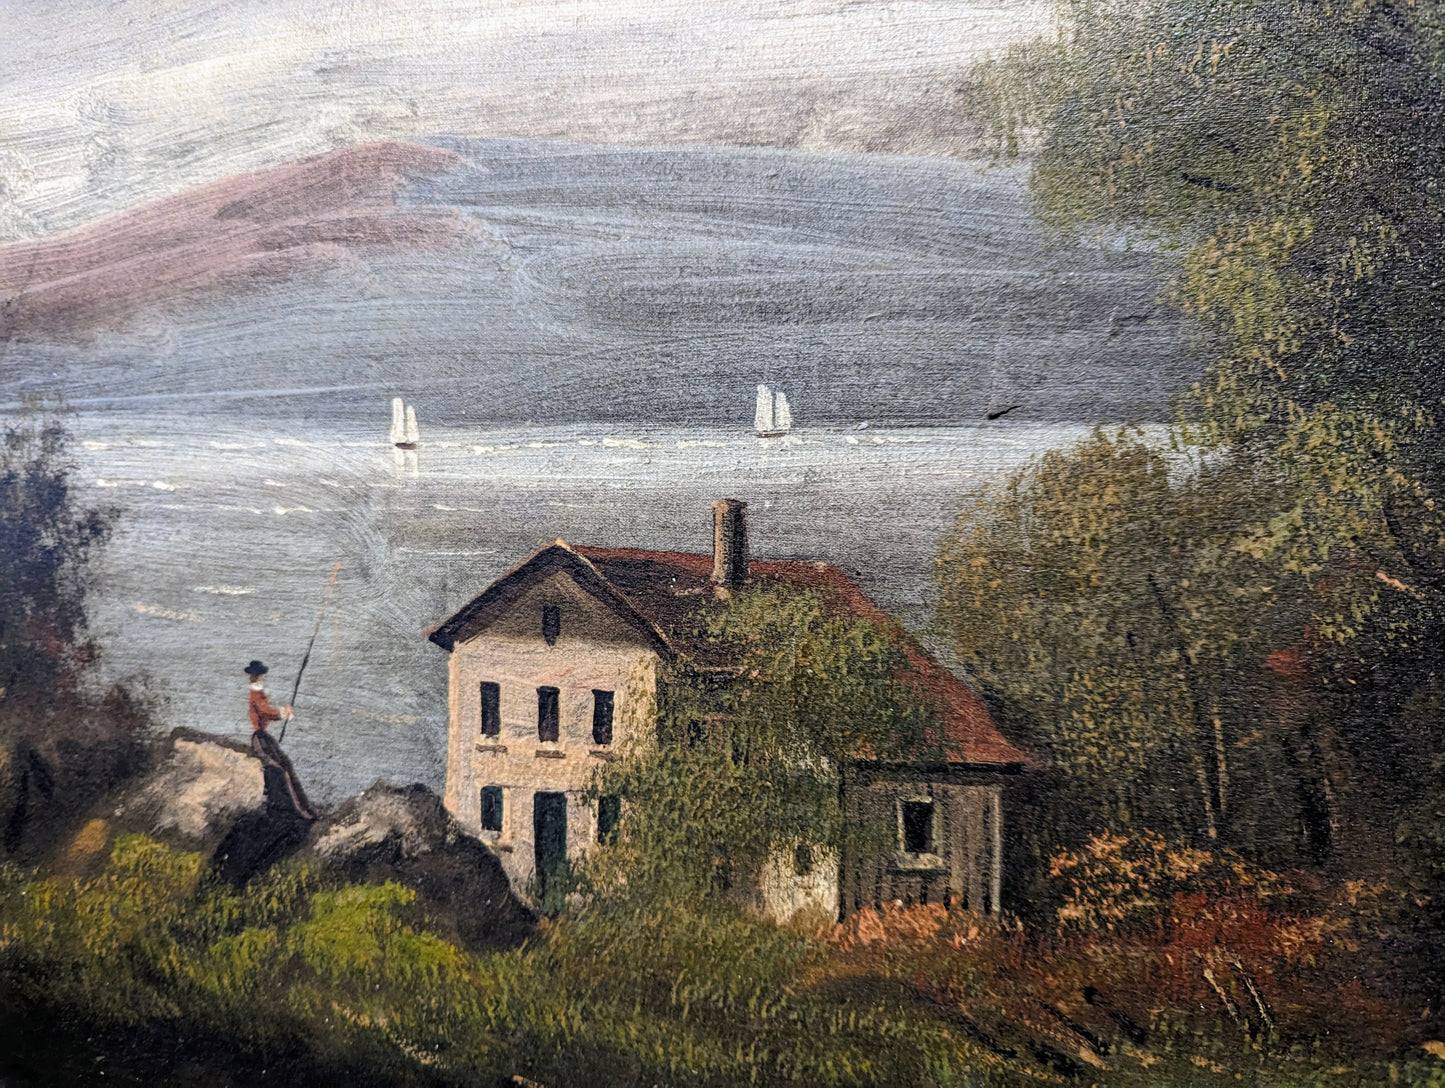 Antique landscape painting farmhouse, figure fishing